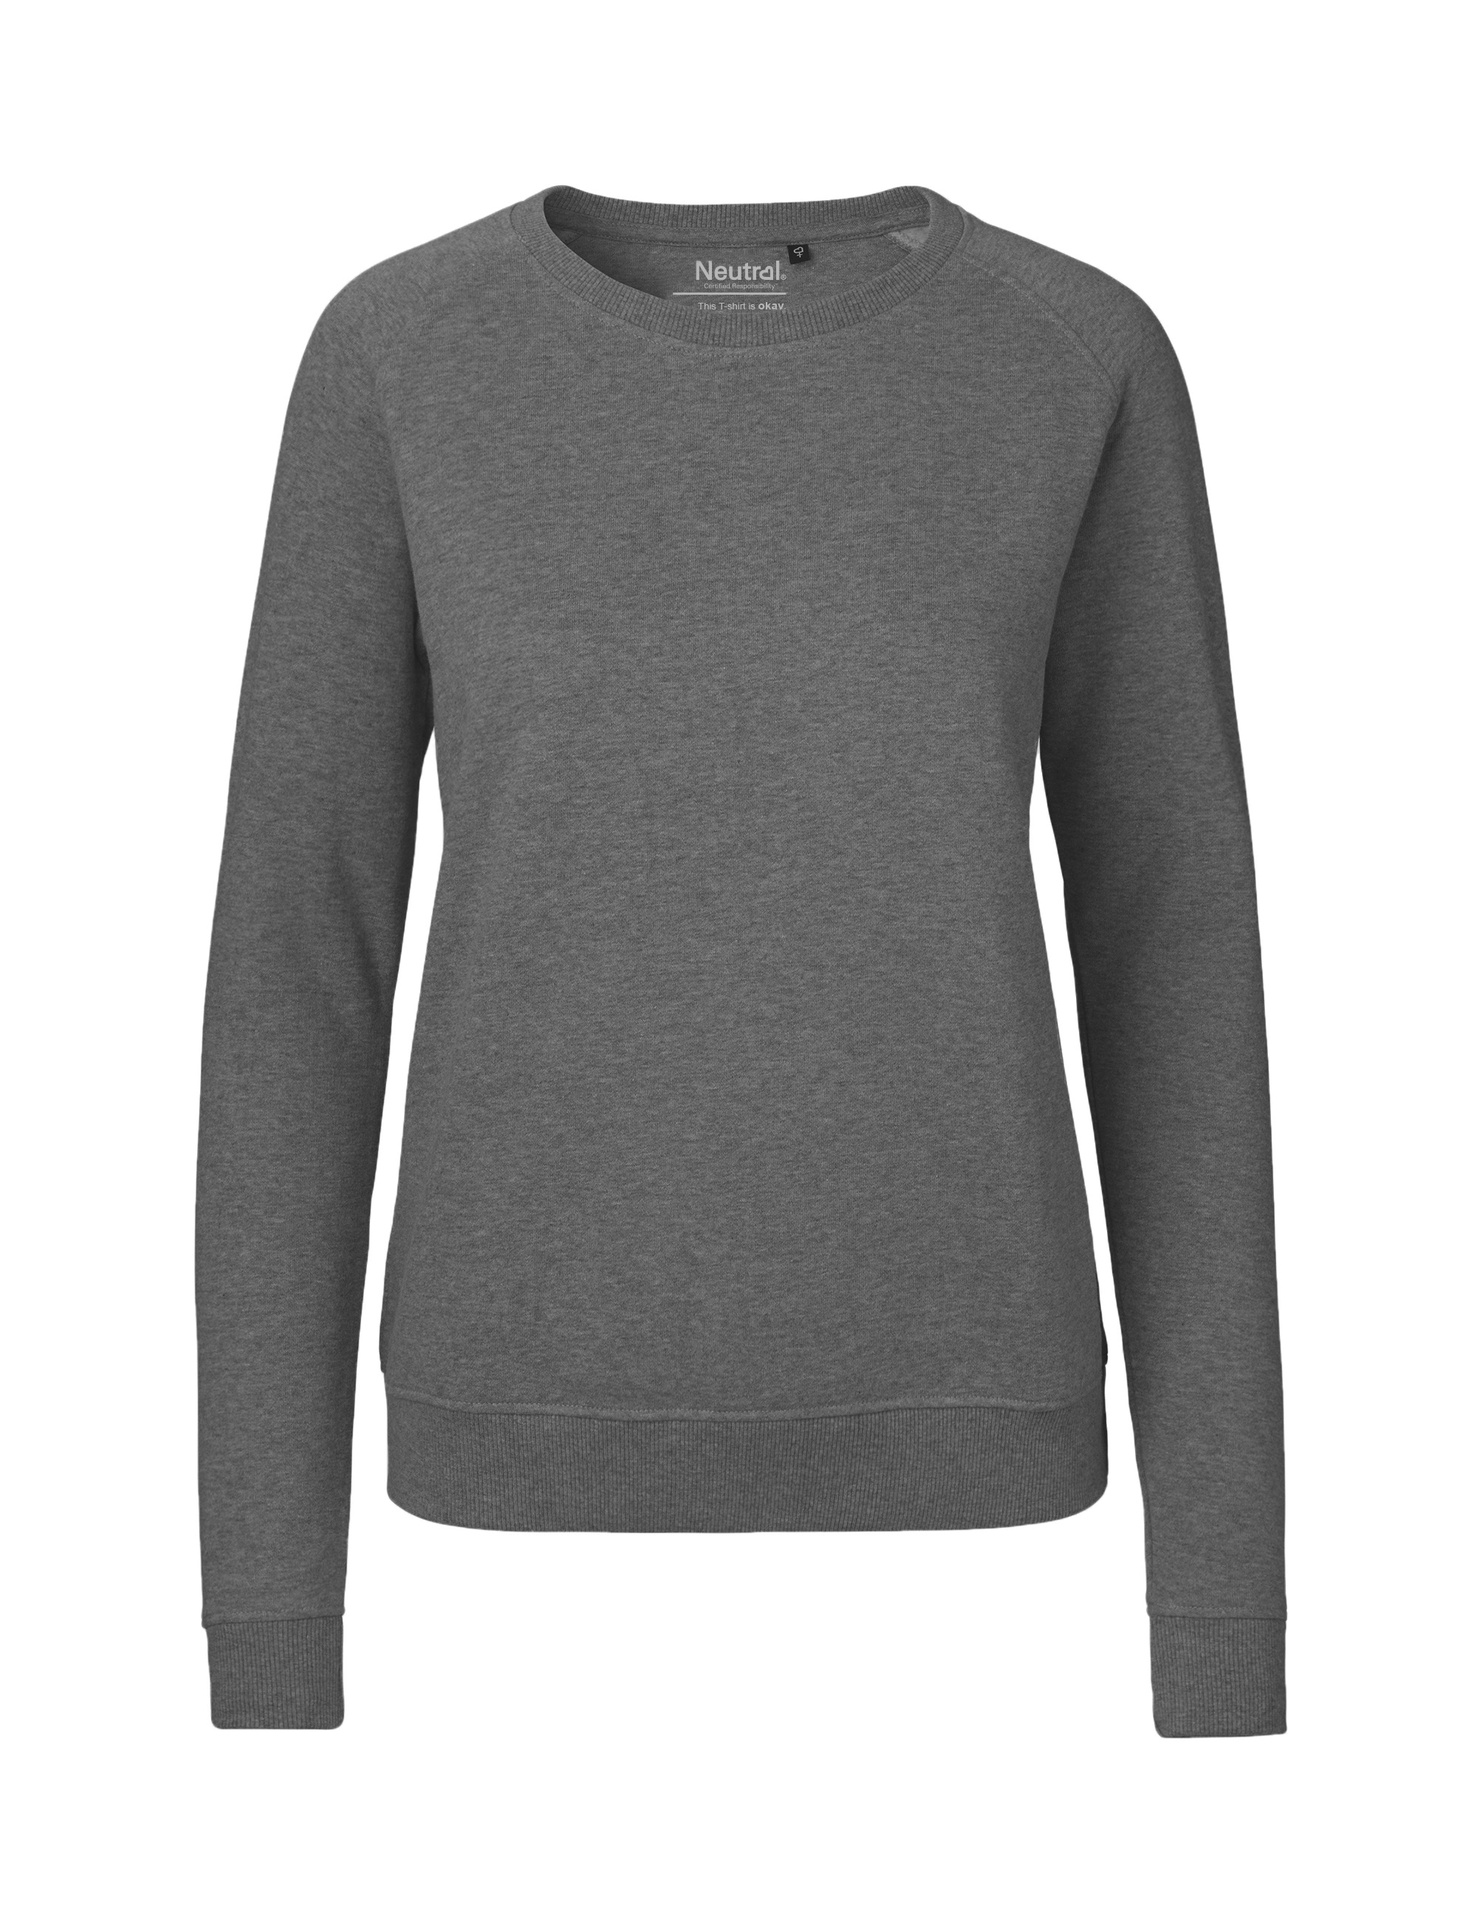 [PR/04879] Ladies Sweatshirt (Dark Heather 08, 2XL)